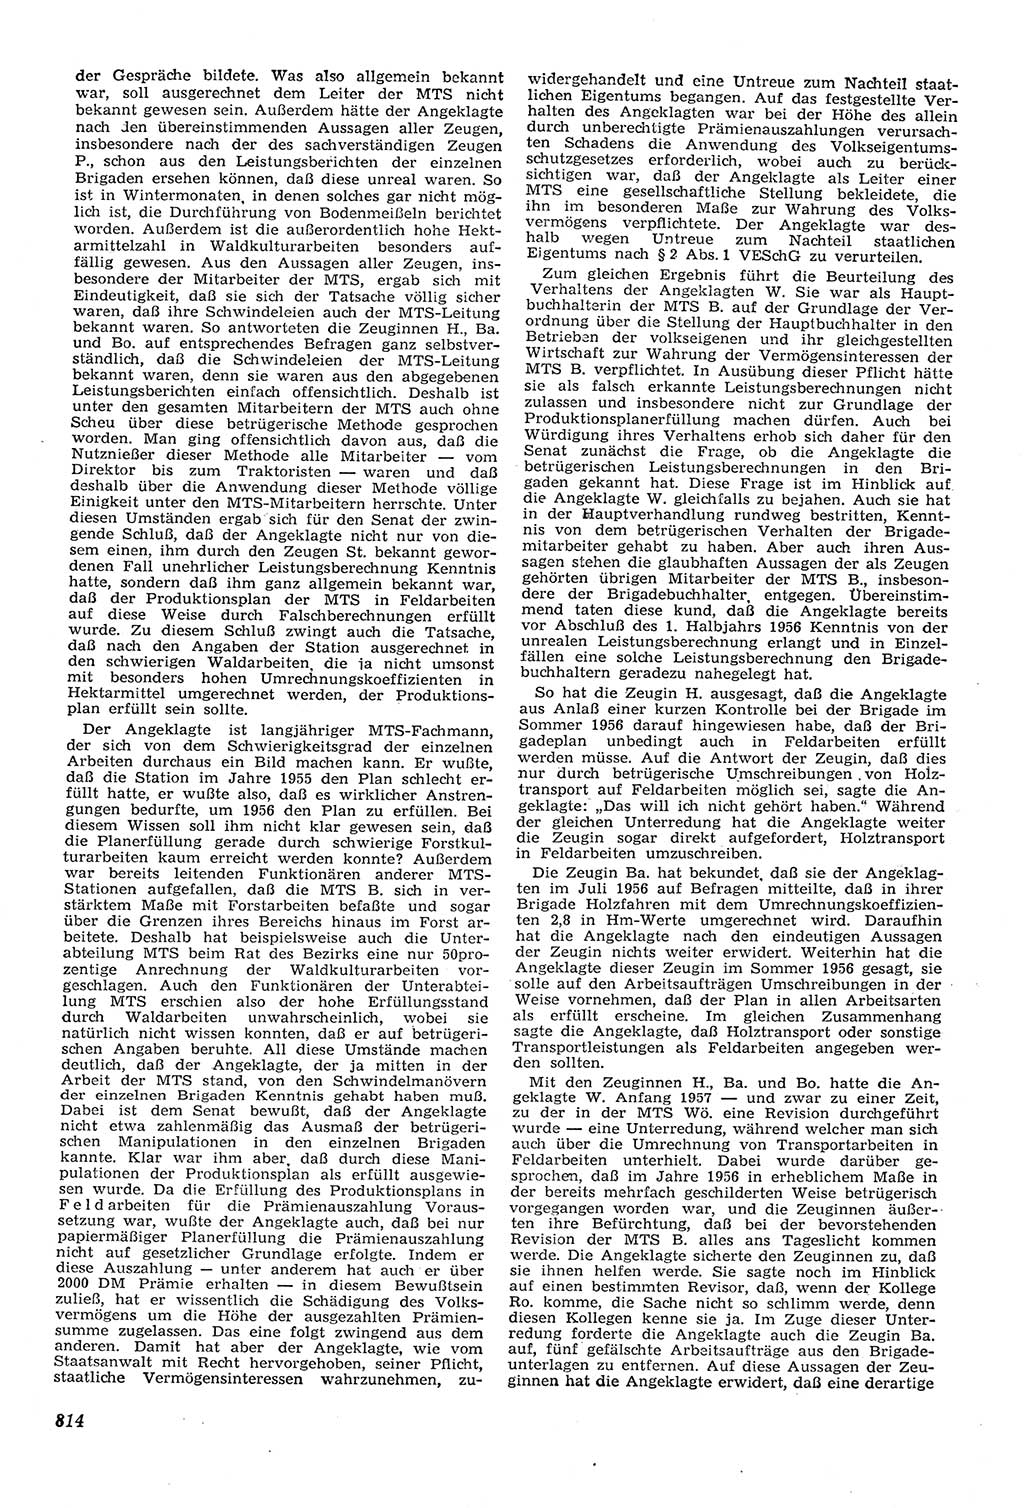 Neue Justiz (NJ), Zeitschrift für Recht und Rechtswissenschaft [Deutsche Demokratische Republik (DDR)], 11. Jahrgang 1957, Seite 814 (NJ DDR 1957, S. 814)